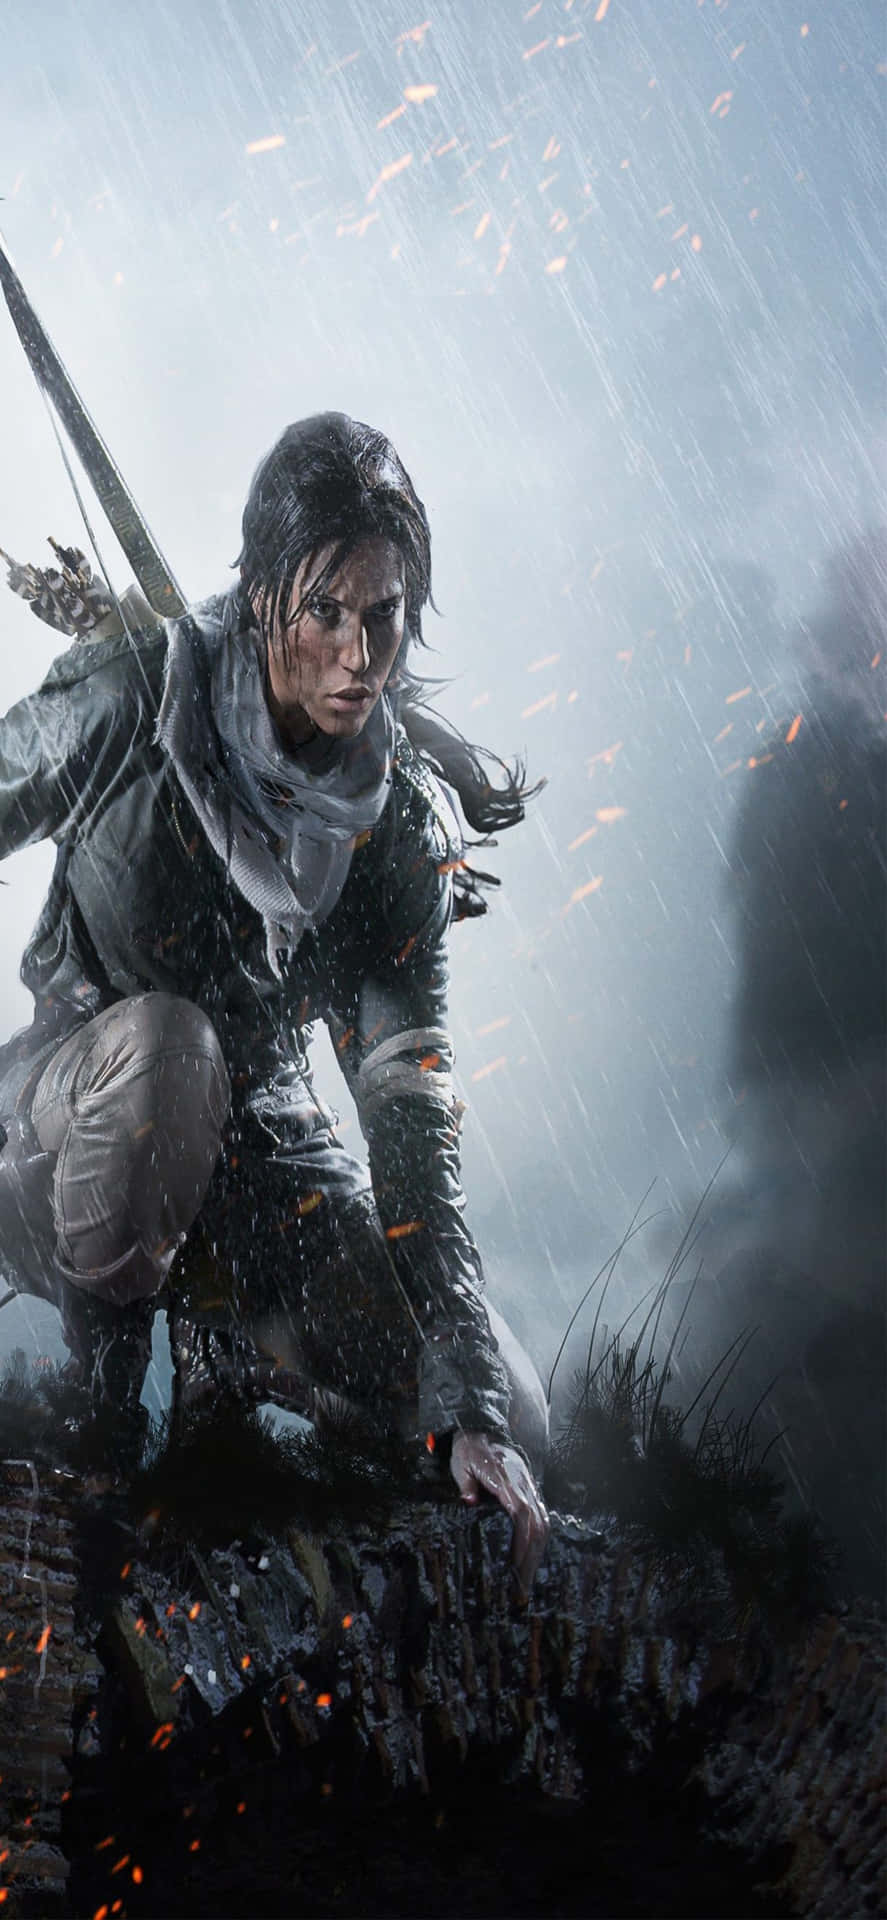 Avventurapiena D'azione In Rise Of The Tomb Raider.